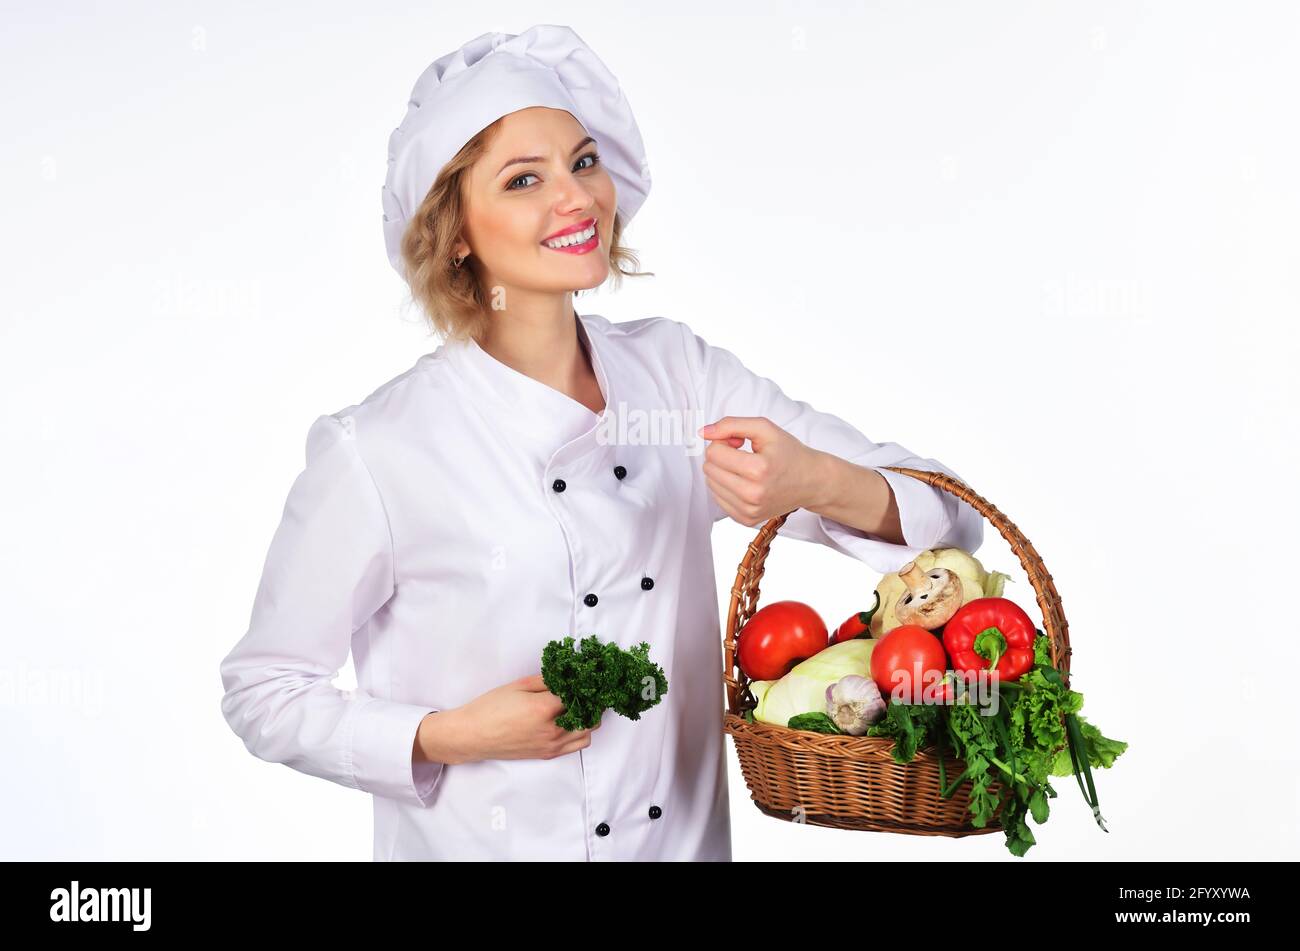 Femme de chef souriante avec panier de légumes. Cuisine professionnelle  avec panier de légumes frais. Concept de nourriture biologique Photo Stock  - Alamy